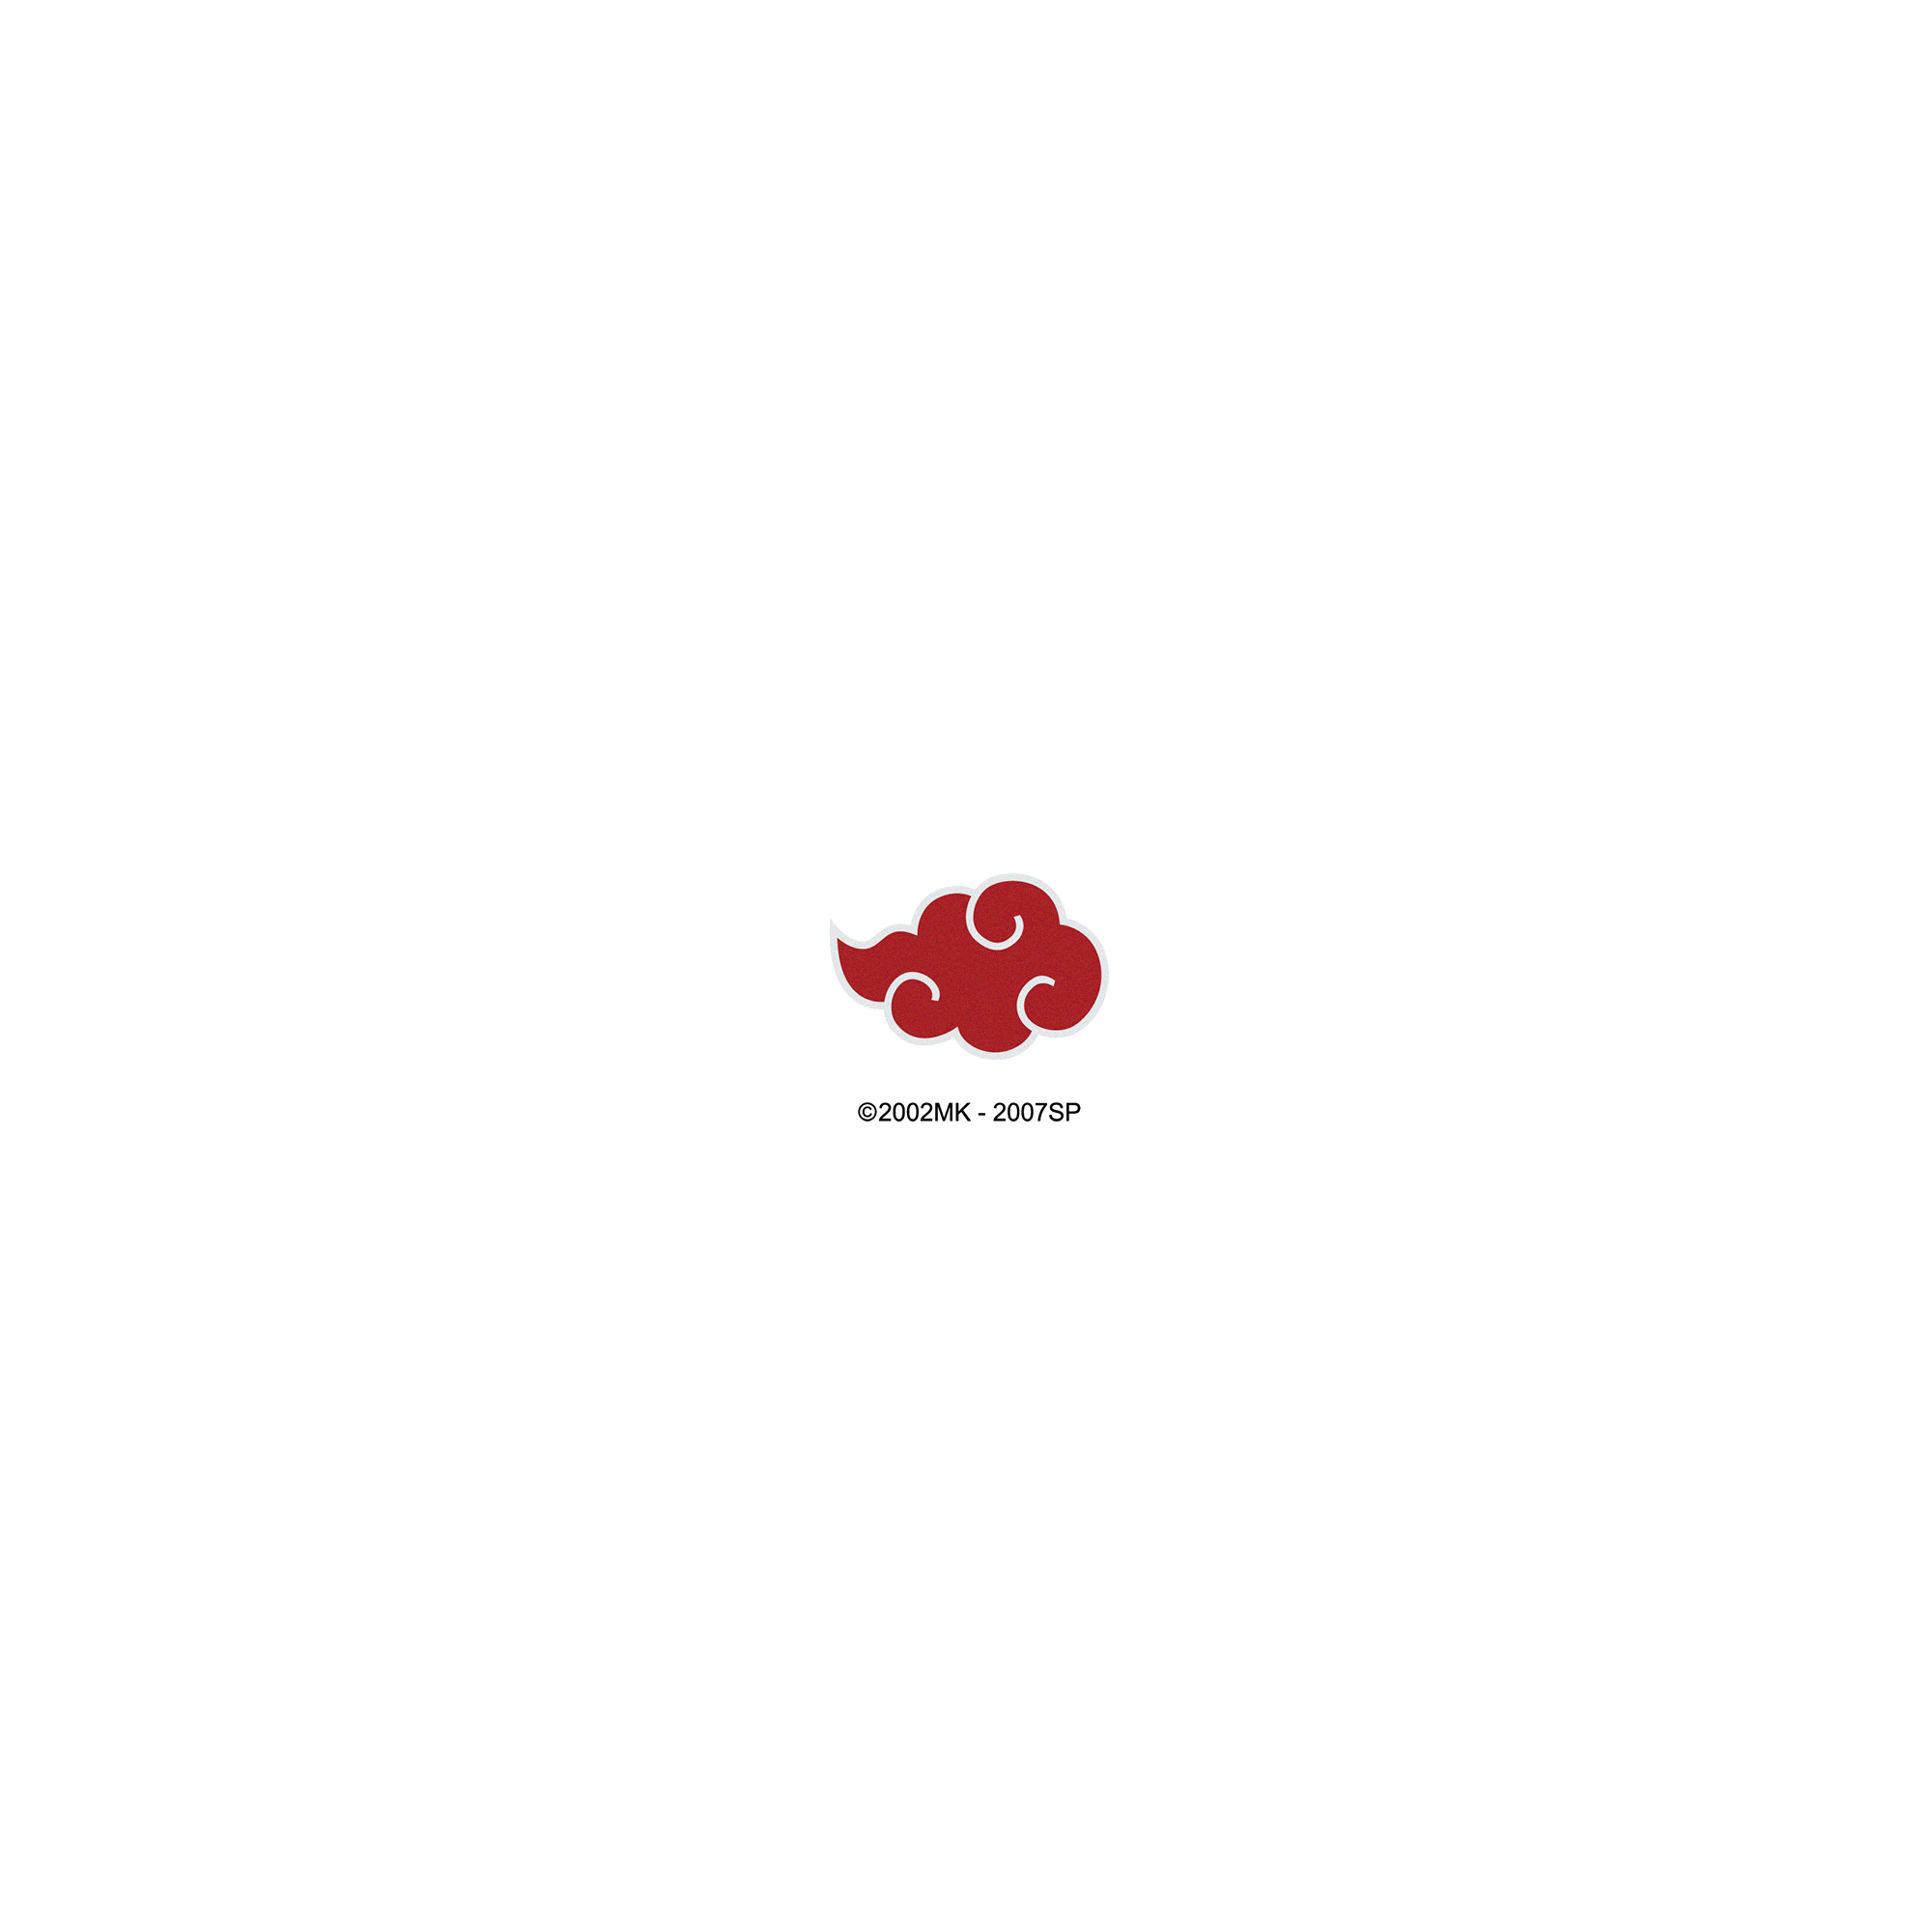 Akatsuki Logo PNG Pic